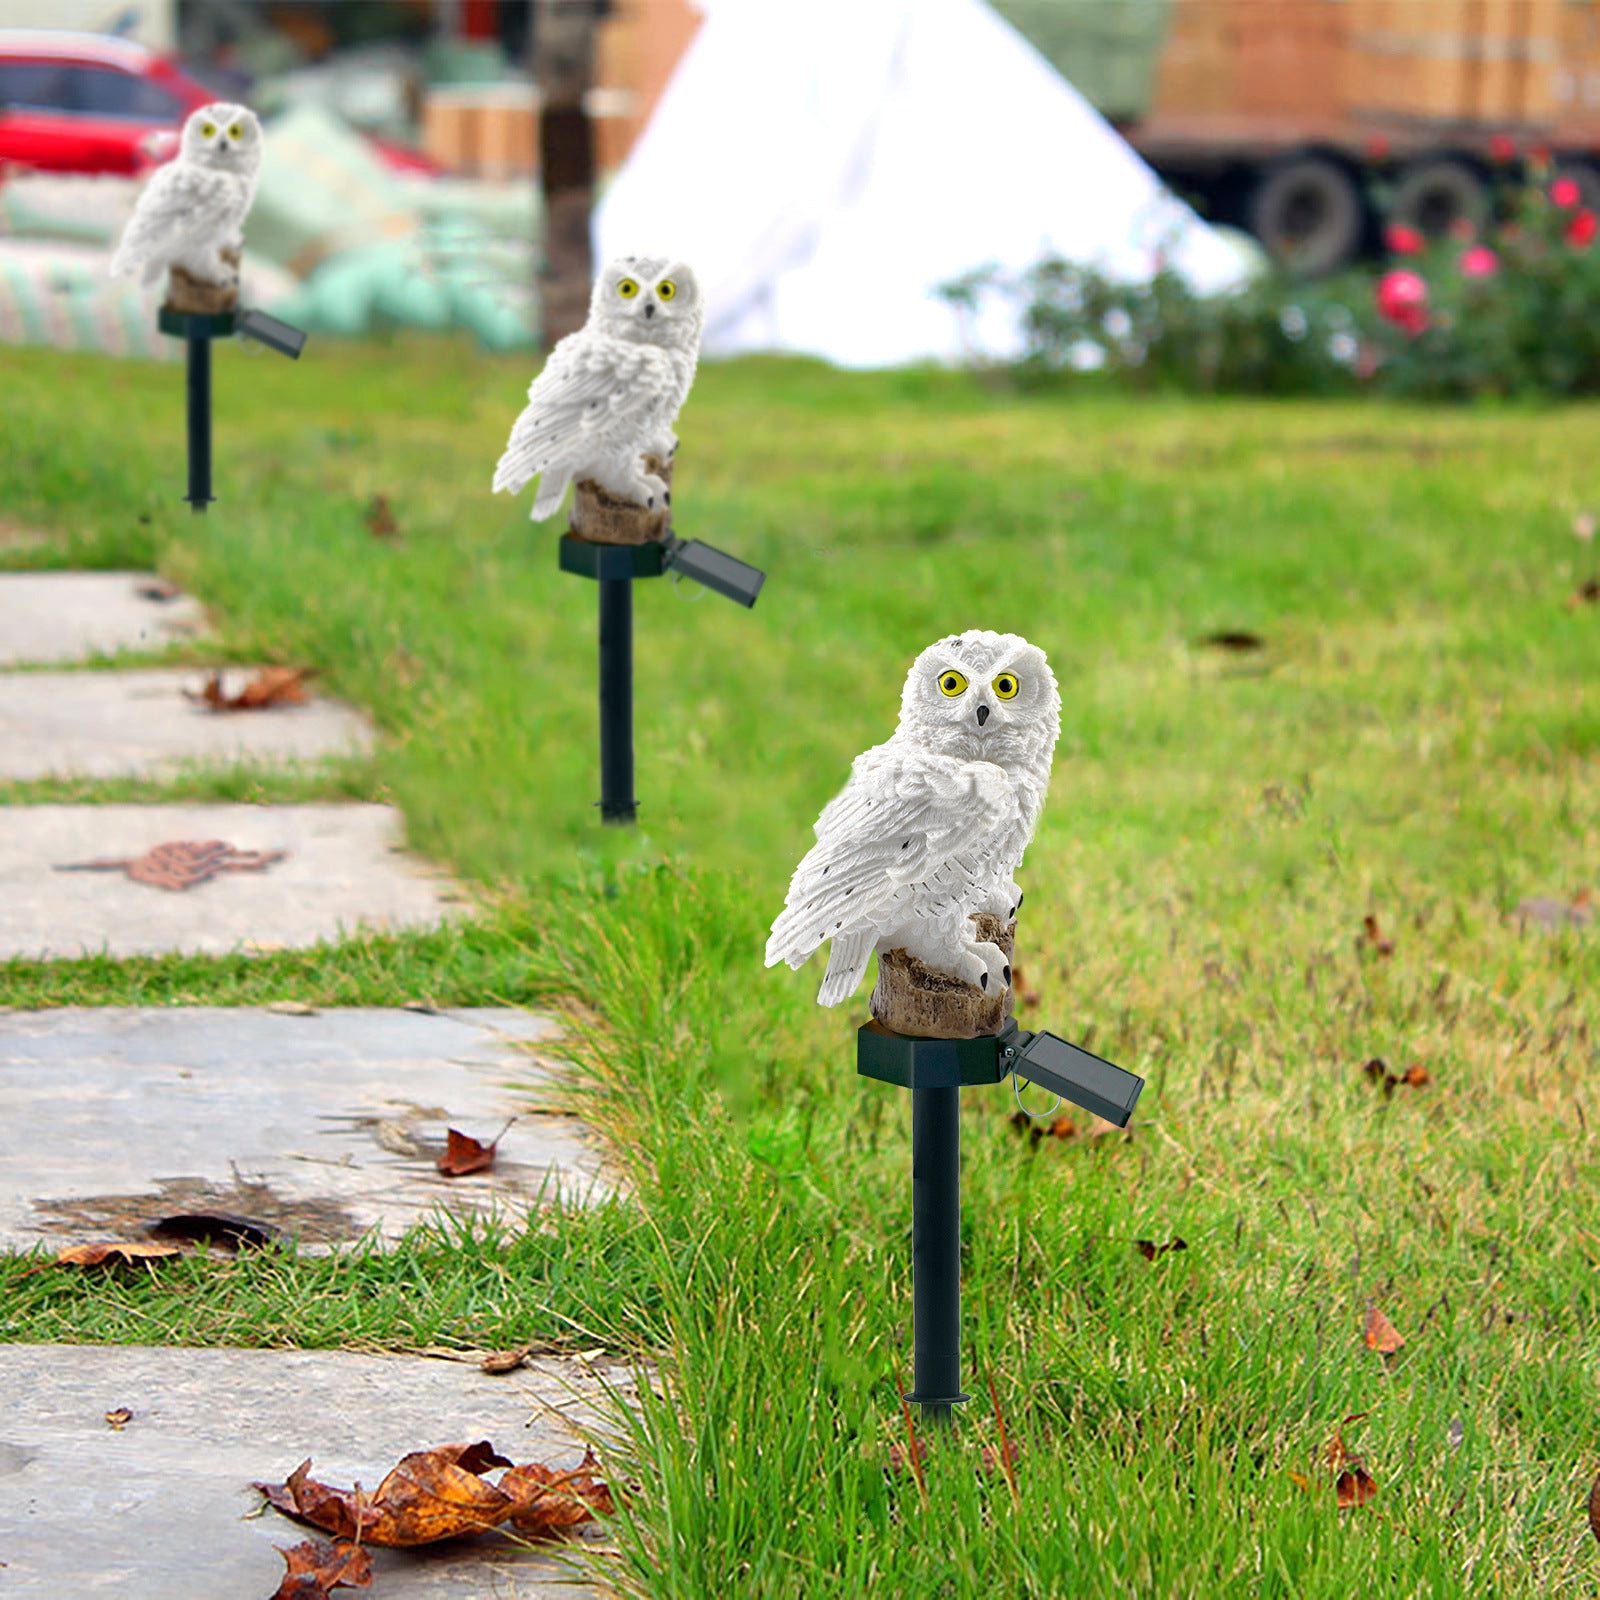 Owl Garden Decor | Solar Owl Garden Light